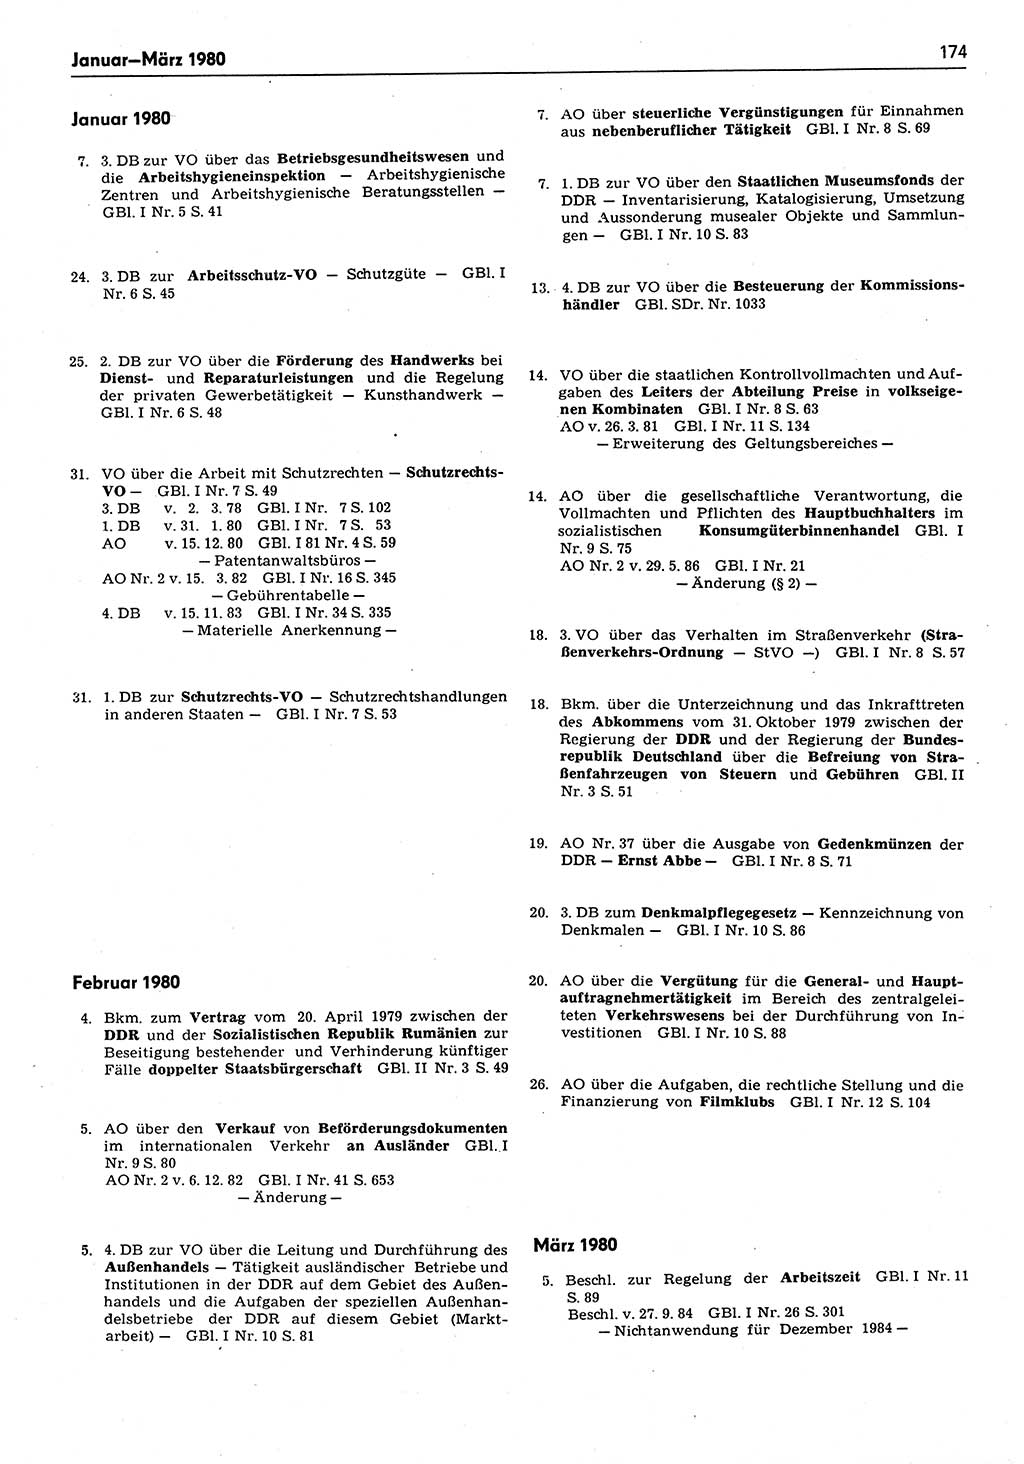 Das geltende Recht der Deutschen Demokratischen Republik (DDR) 1949-1988, Seite 174 (Gelt. R. DDR 1949-1988, S. 174)